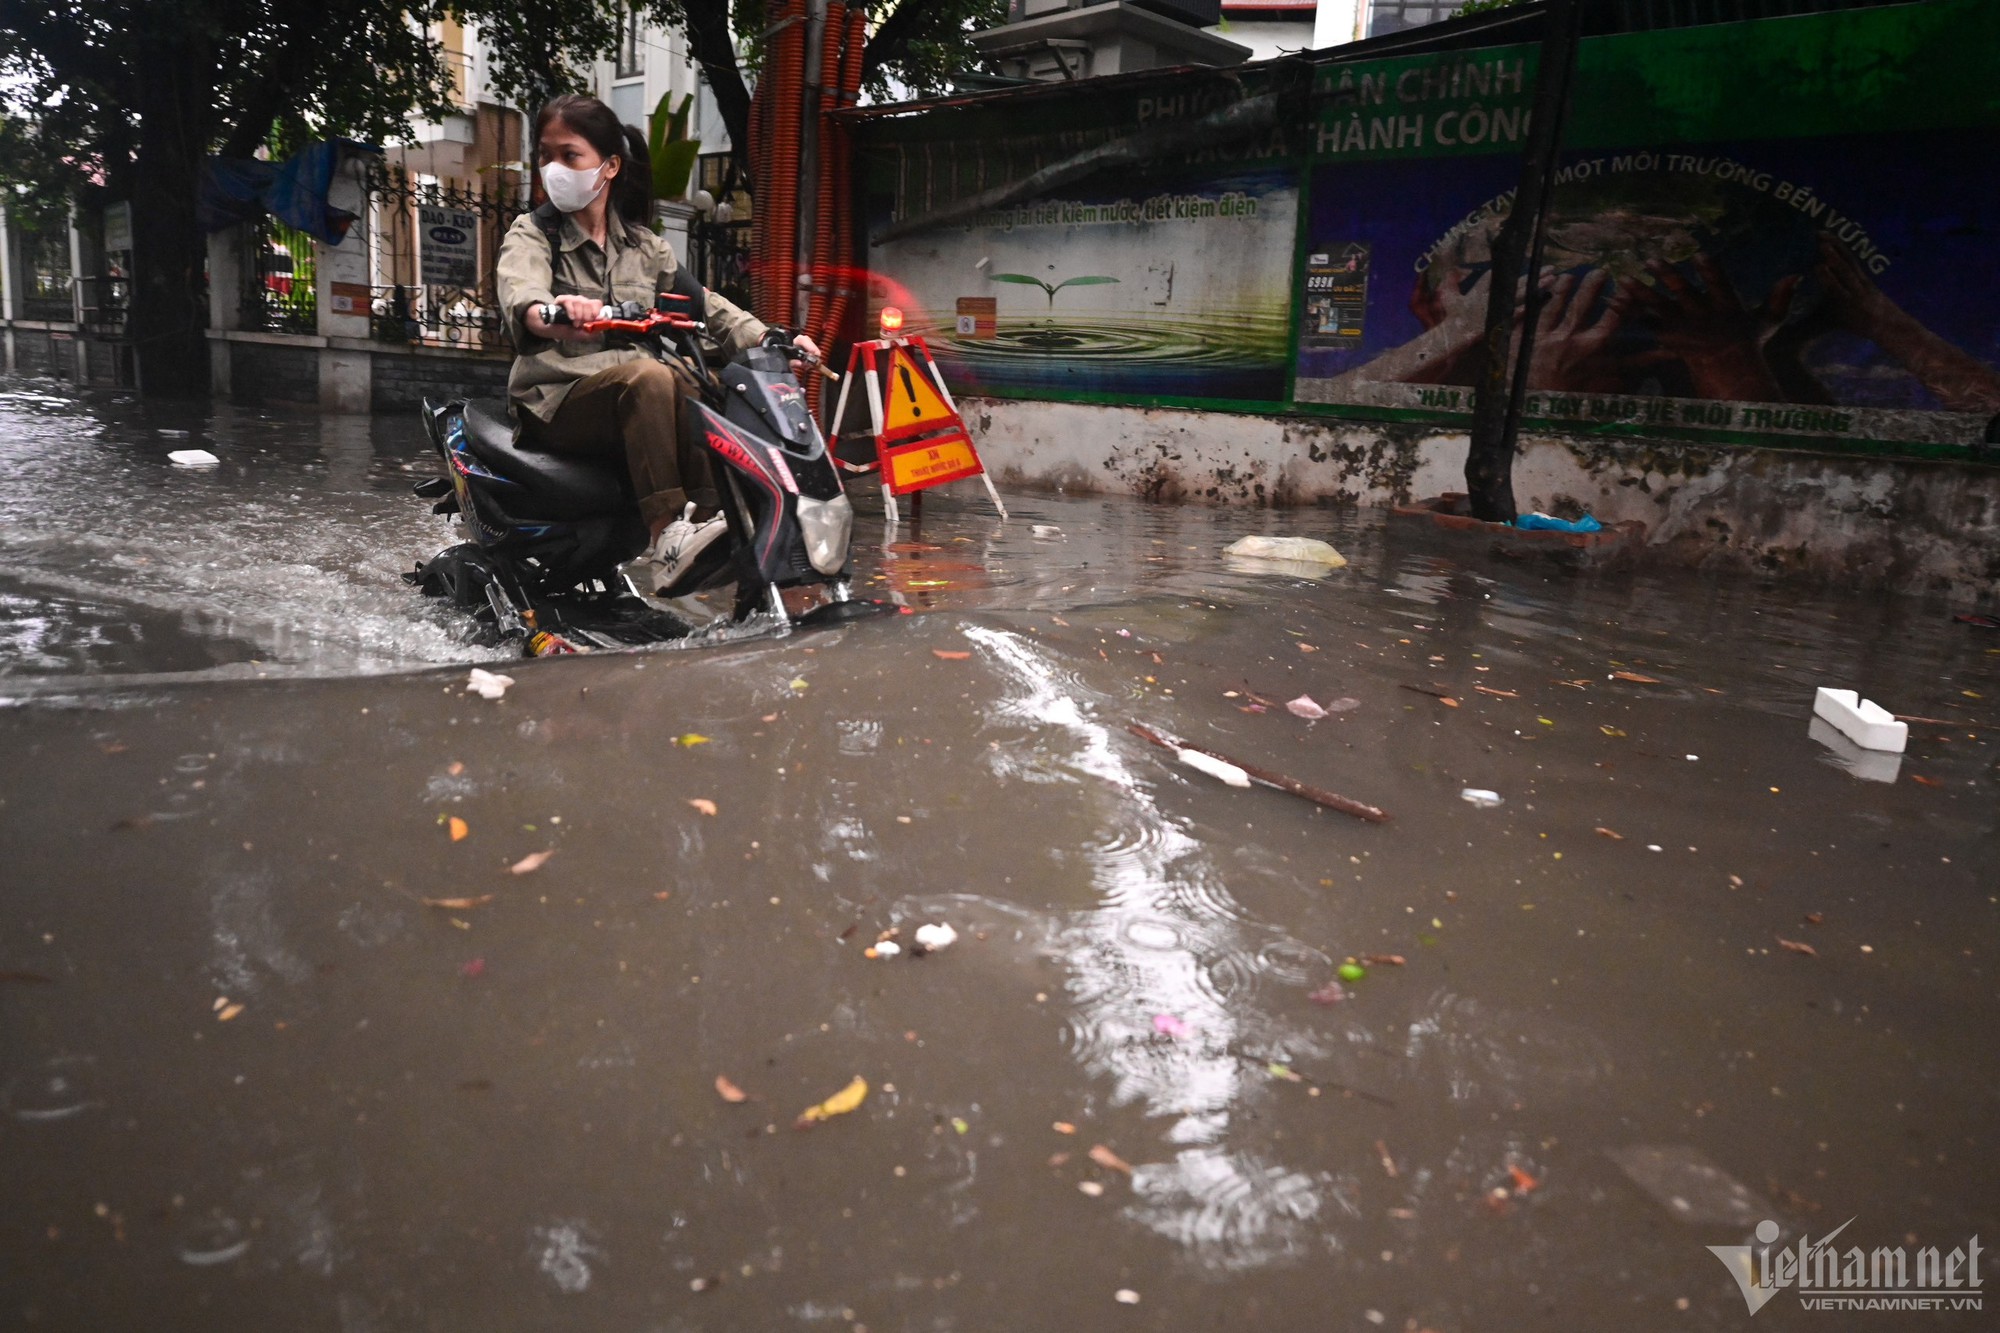 Hà Nội mưa lớn, người đi xe máy chới với giữa dòng nước ngập - Ảnh 6.